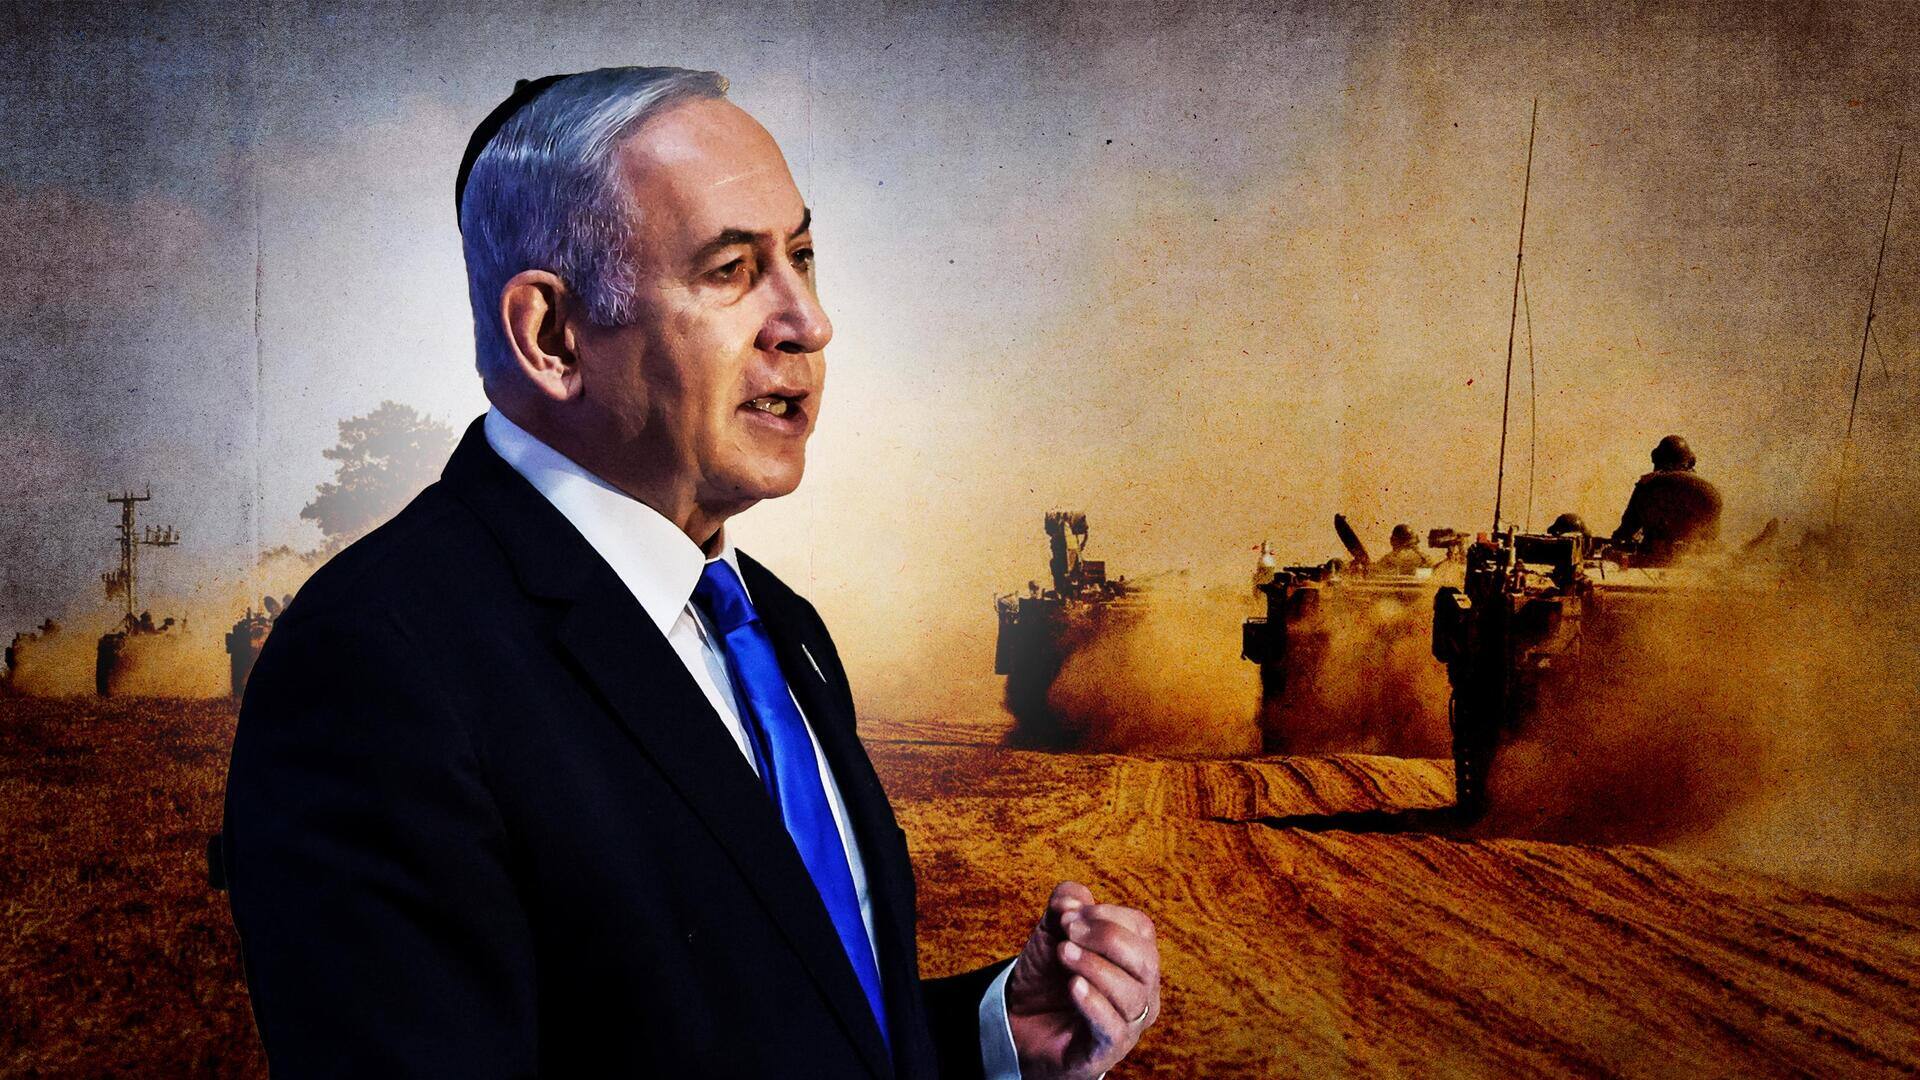 गाजा पट्टी में इजराली सेना की जमीनी हमले की तैयारी, प्रधानमंत्री बोले- अभी तो शुरुआत है